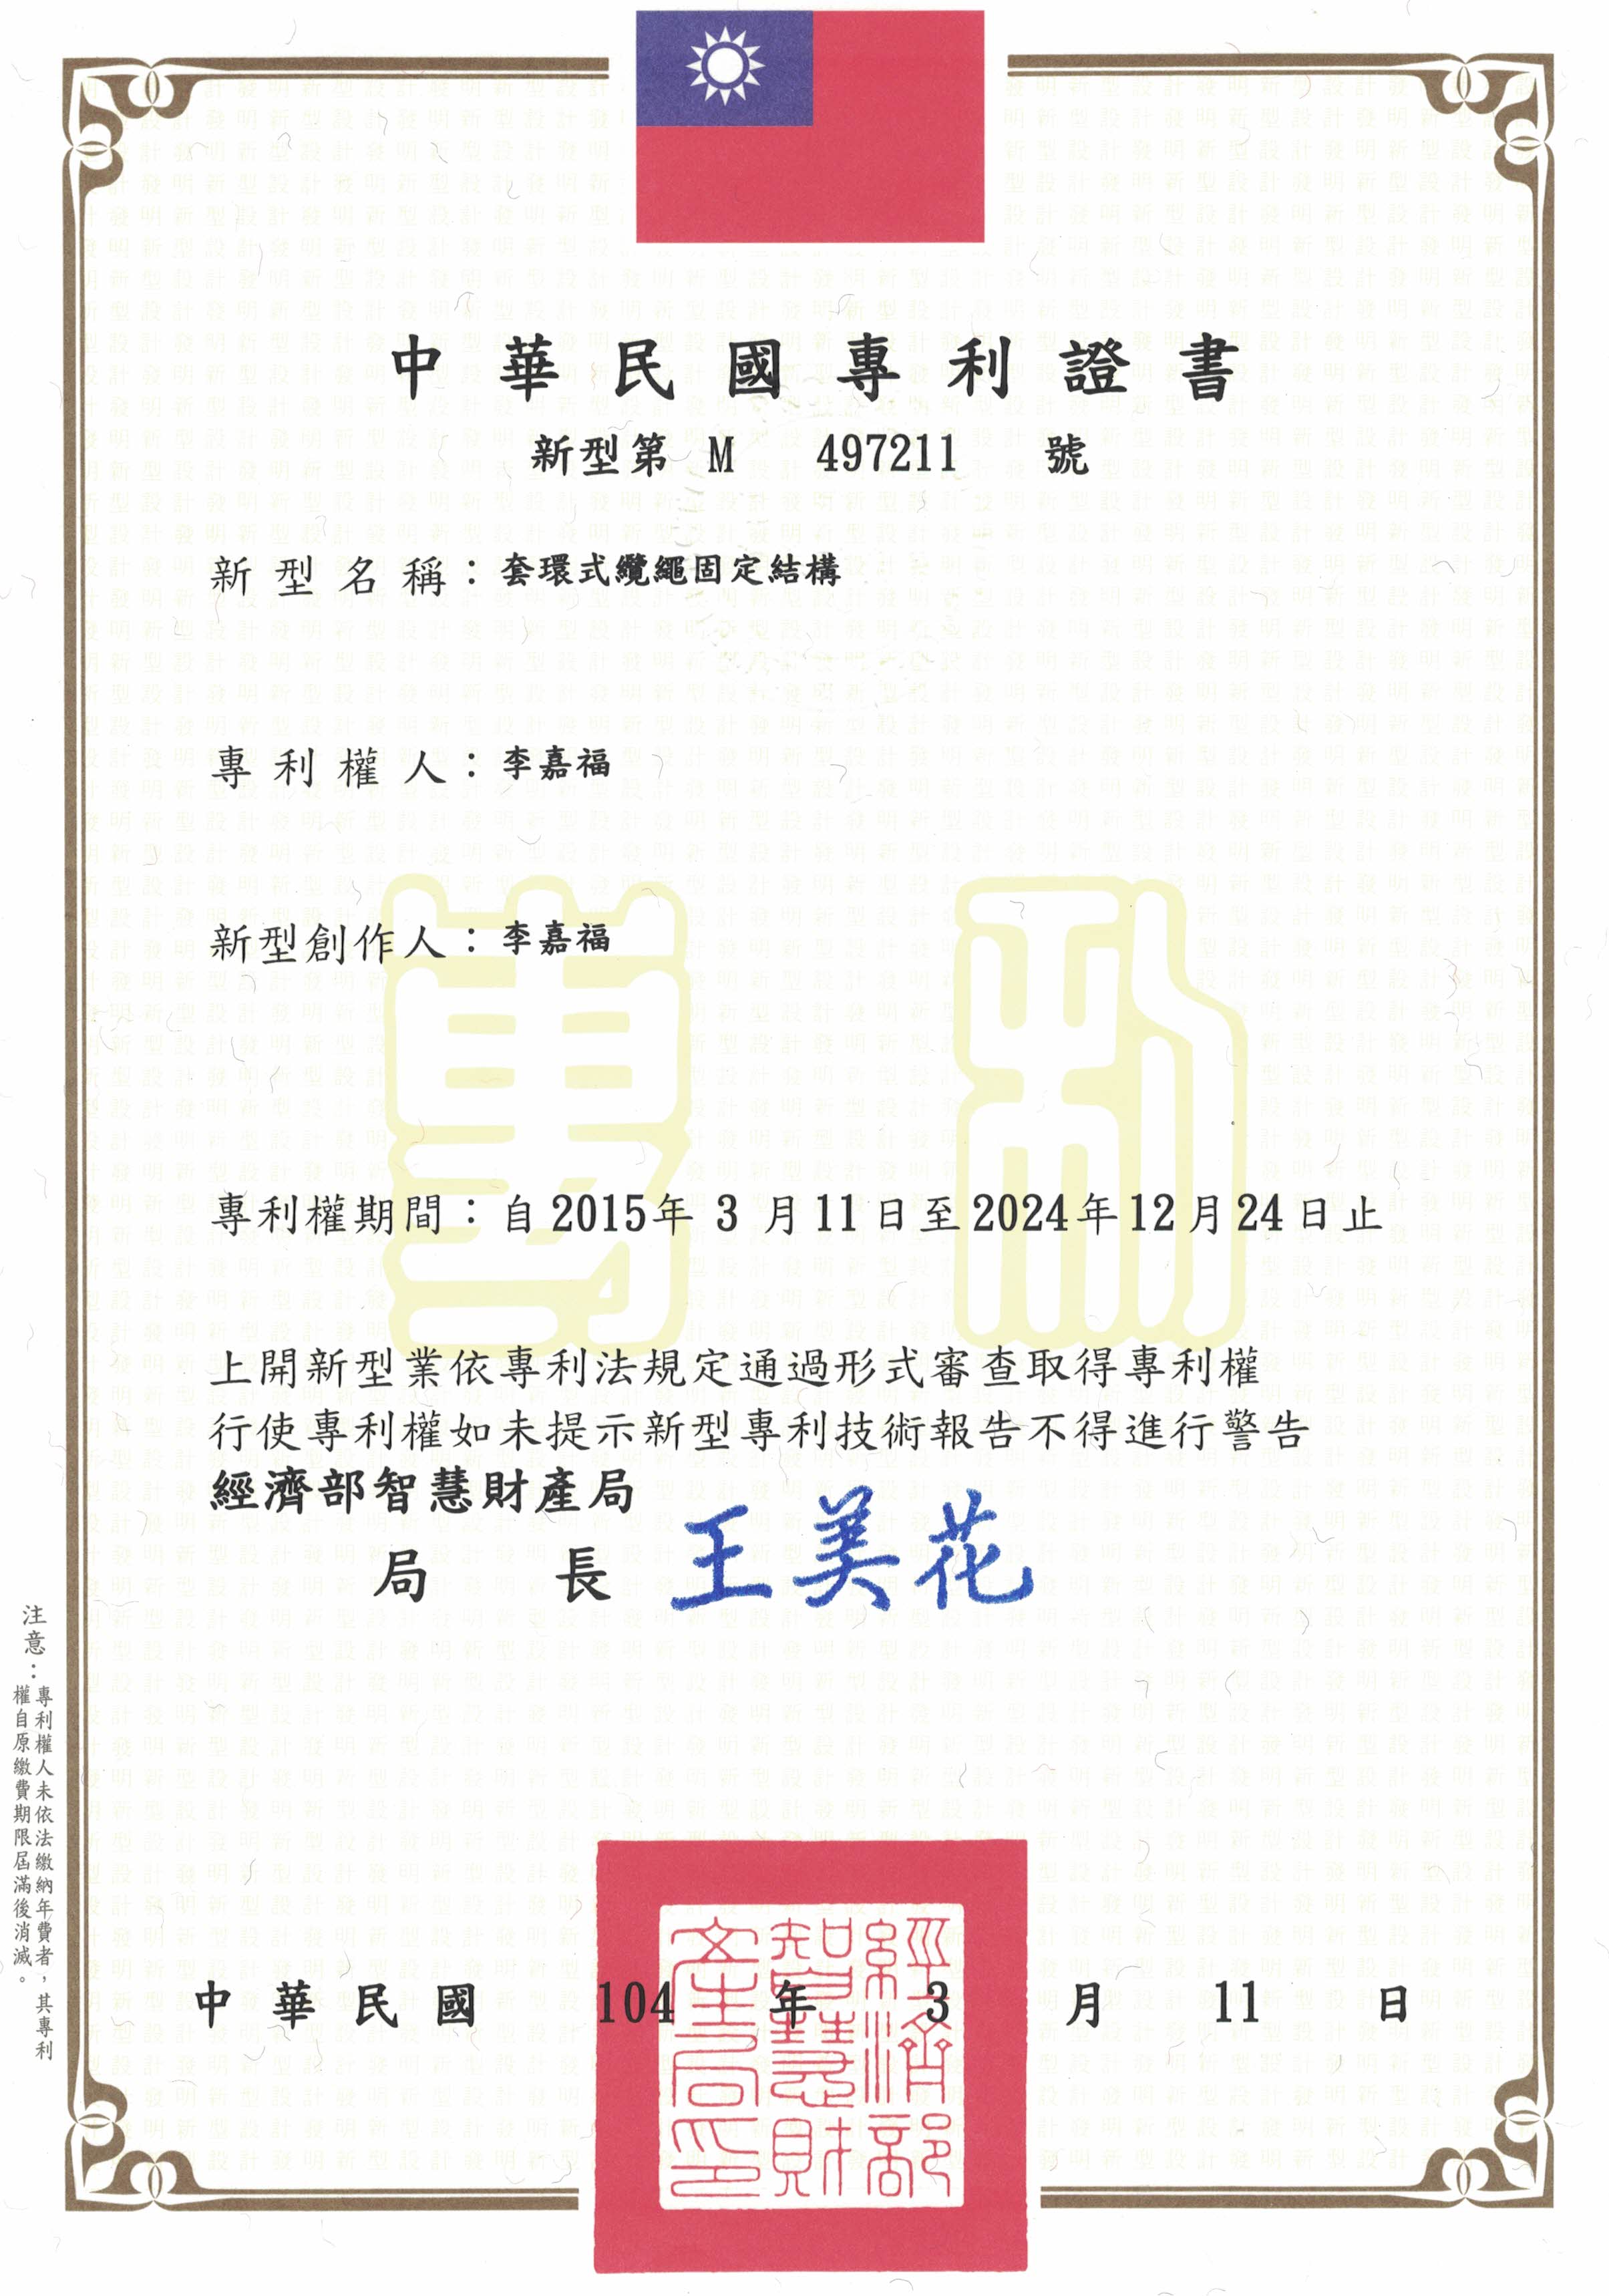 Patent No: M497211 (Taiwan)